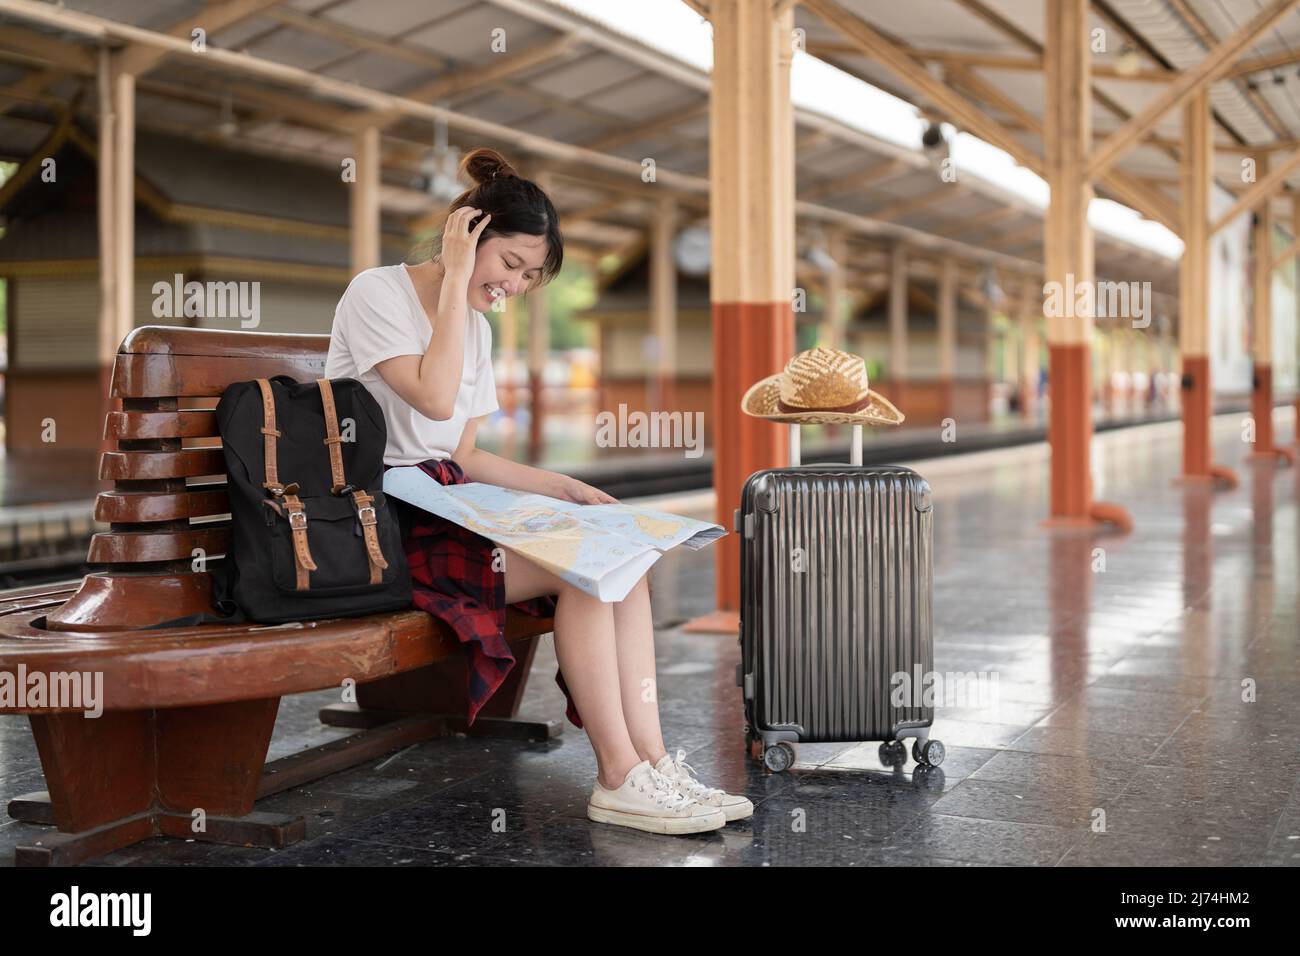 jeune femme asiatique voyageur assis avec une carte choisissez où voyager et sac en attente de train à la gare, concept de voyage d'été Banque D'Images